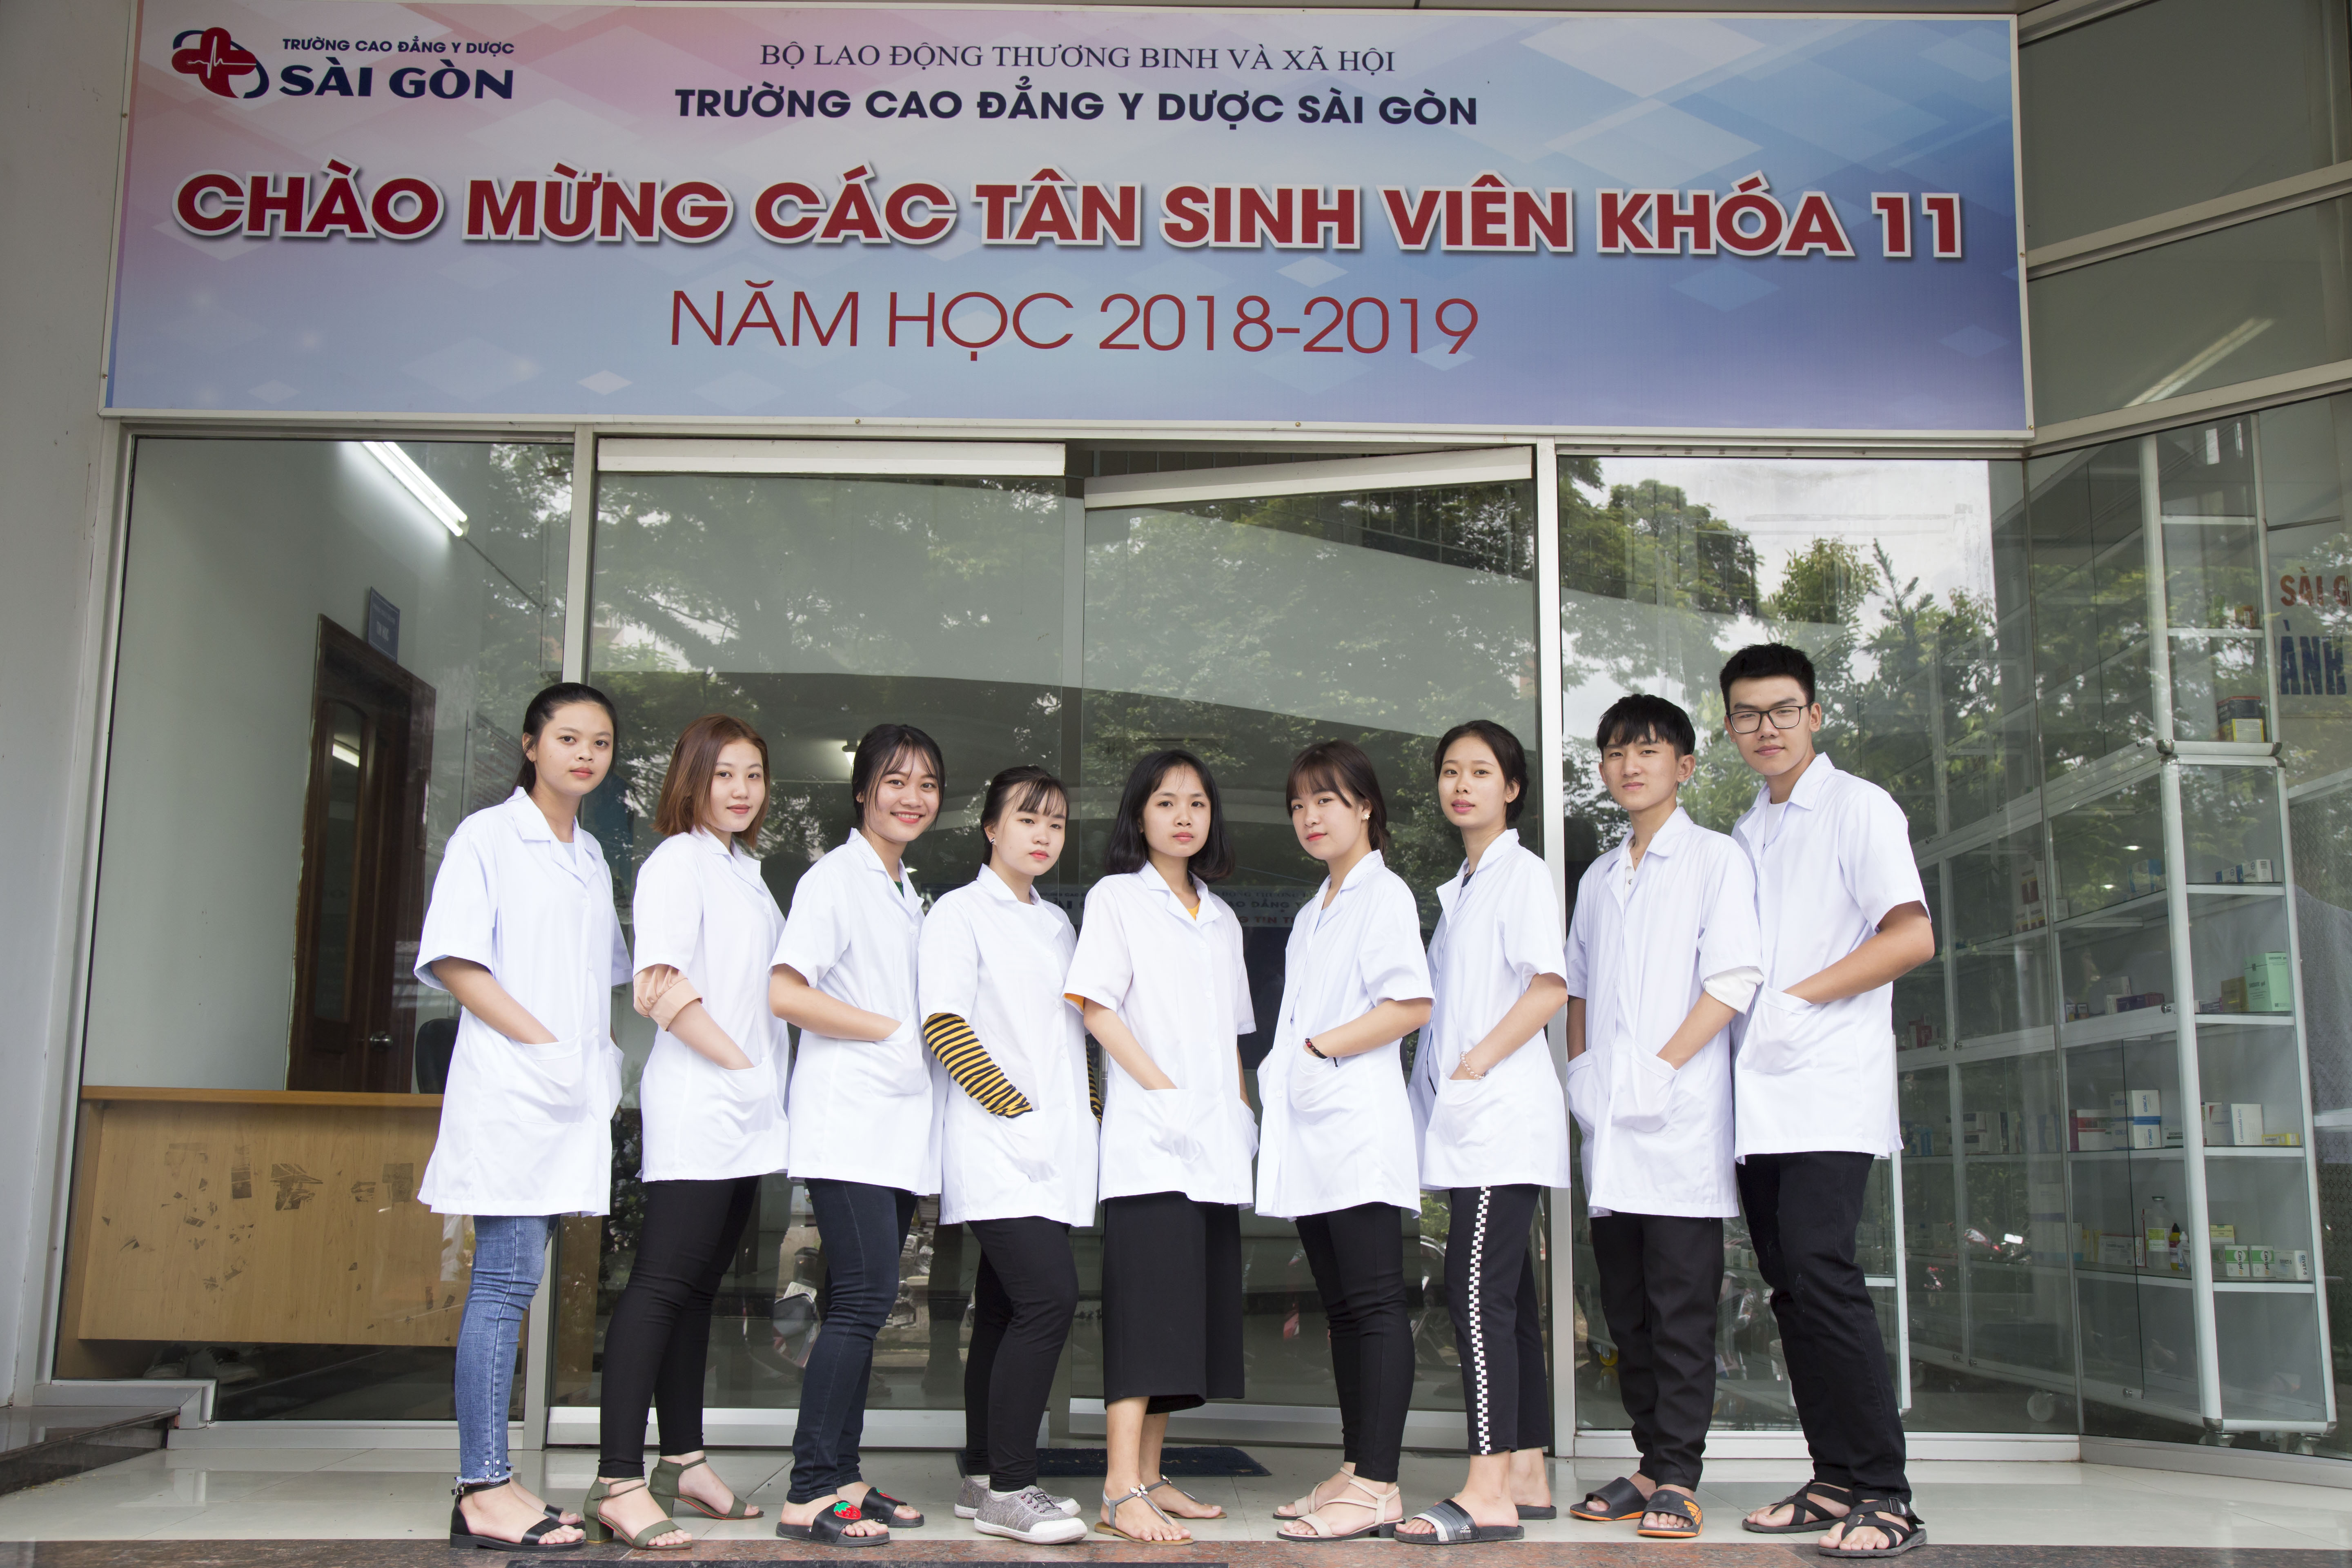 Trường Cao đẳng Y dược Sài Gòn là địa chỉ đào tạo xét nghiệm y học chất lượng